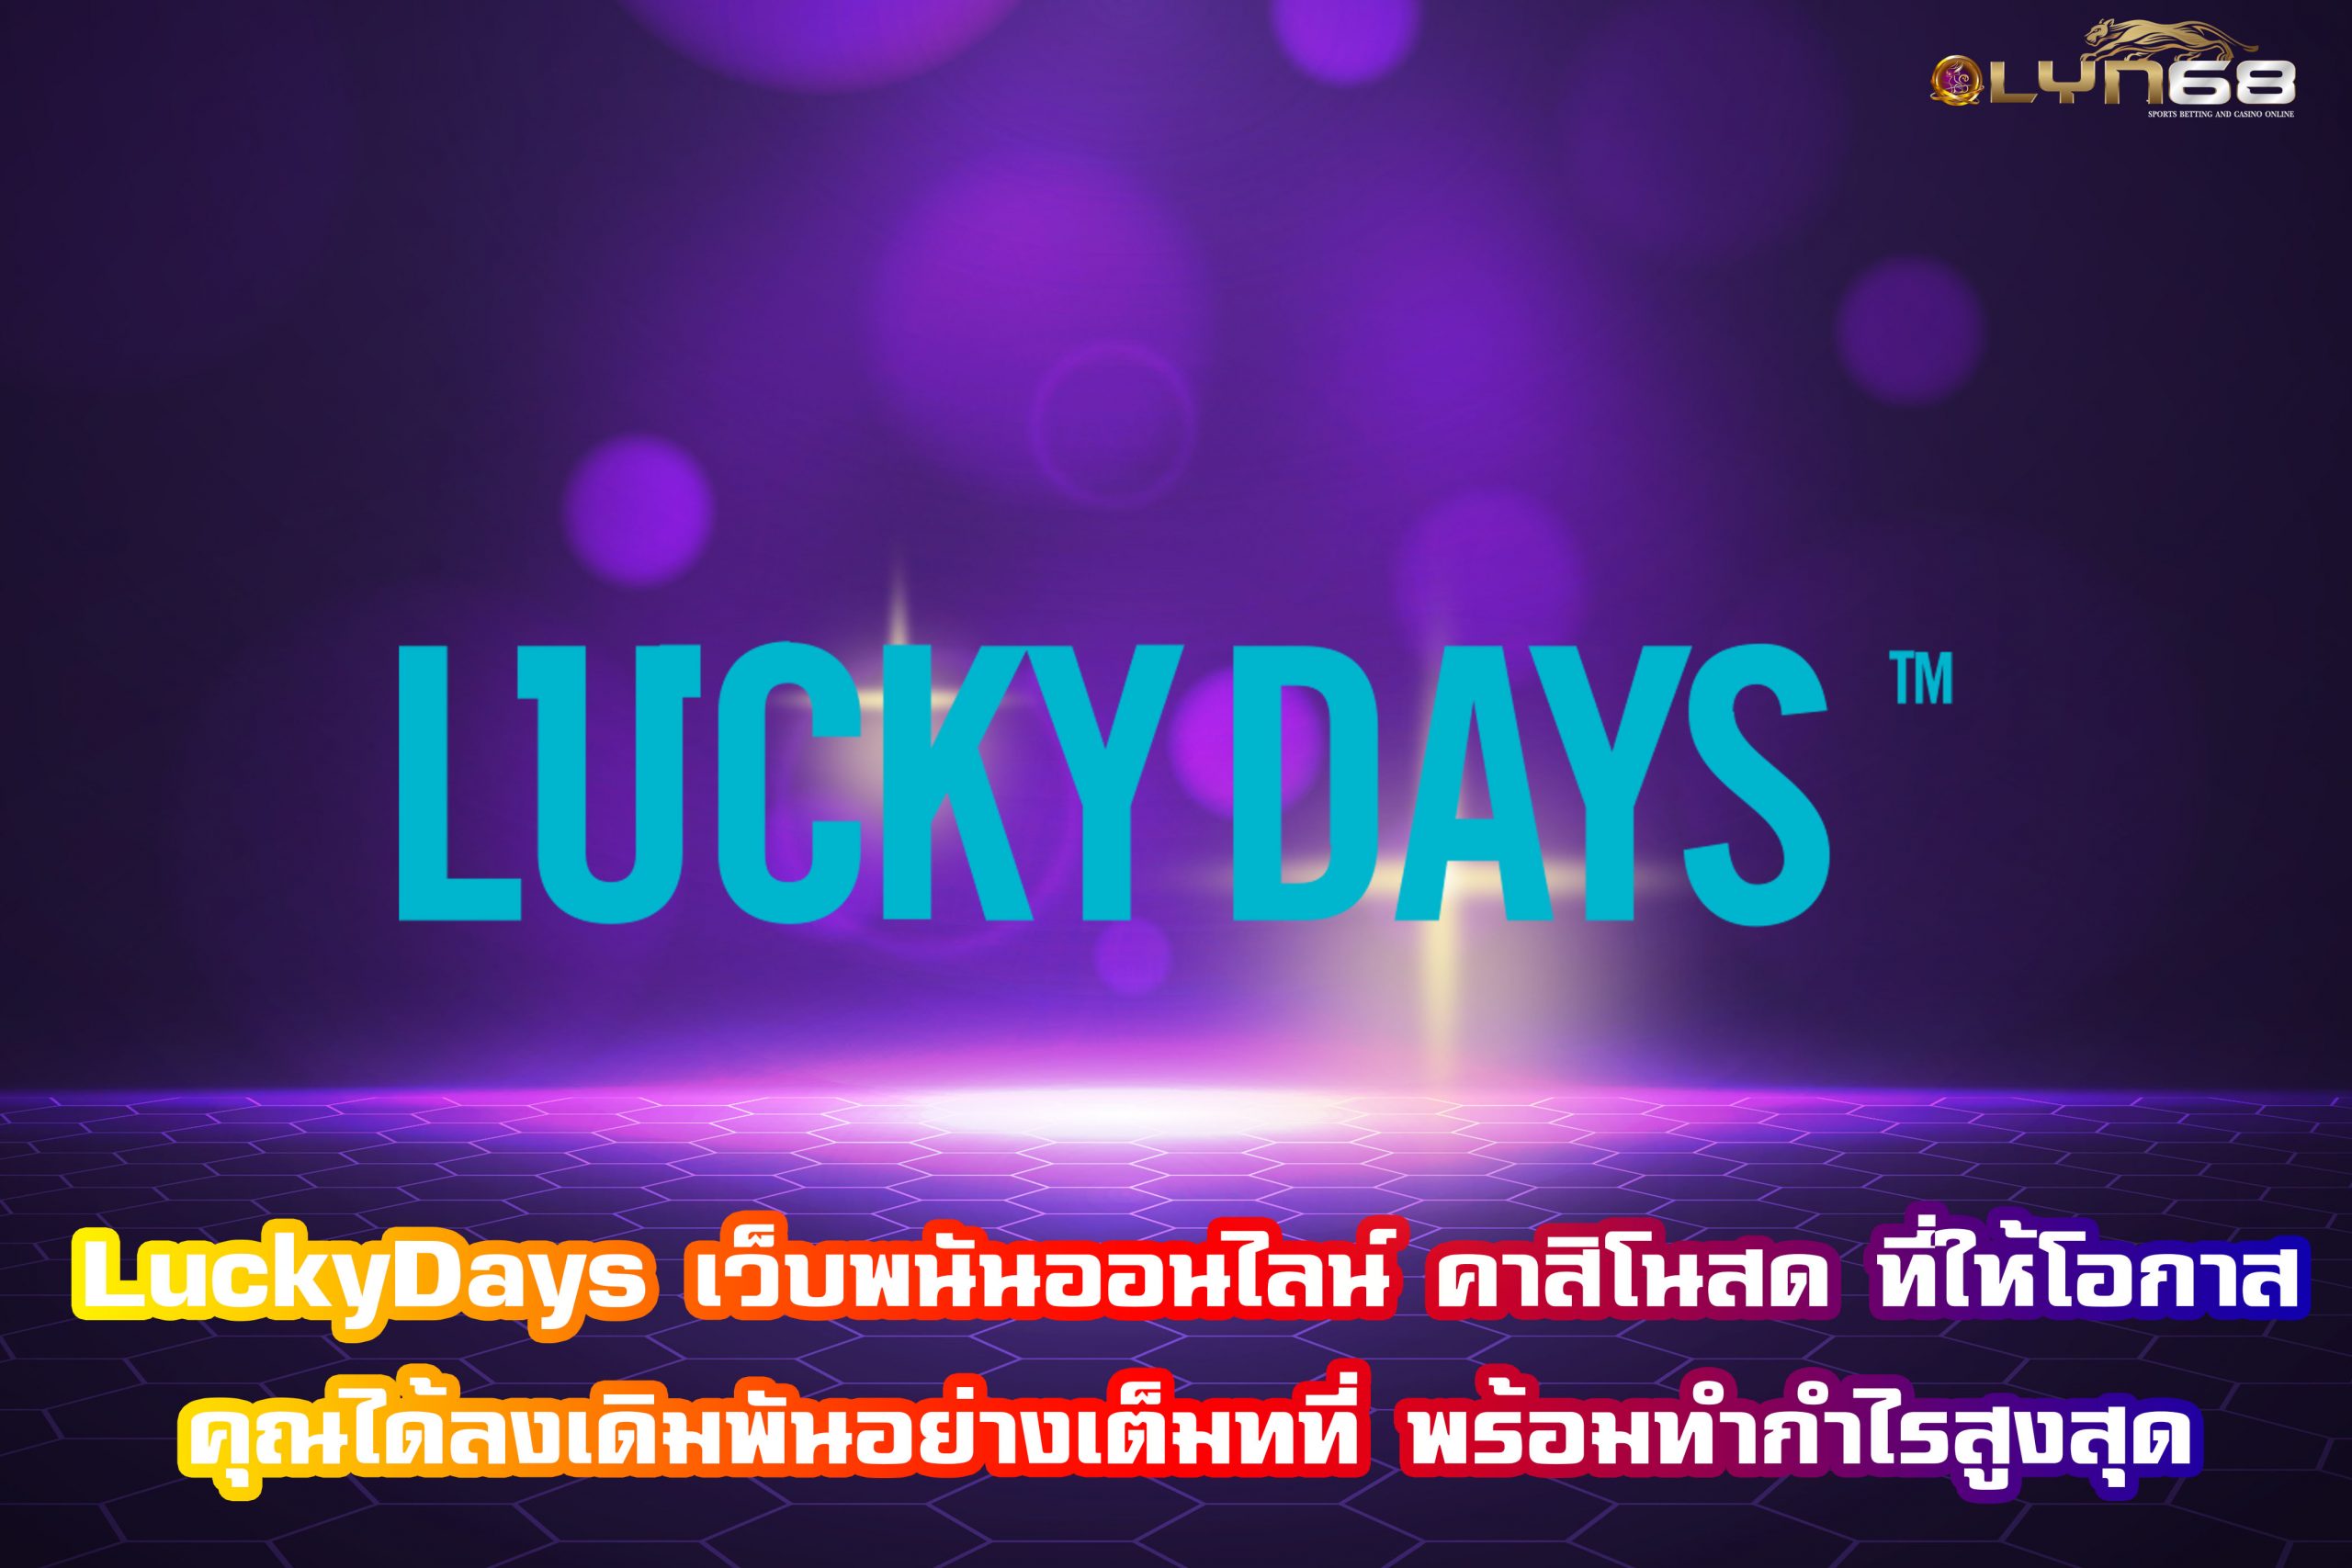 LuckyDays เว็บพนันออนไลน์ และคาสิโนสด วางเดิมพันได้เลยวันนี้